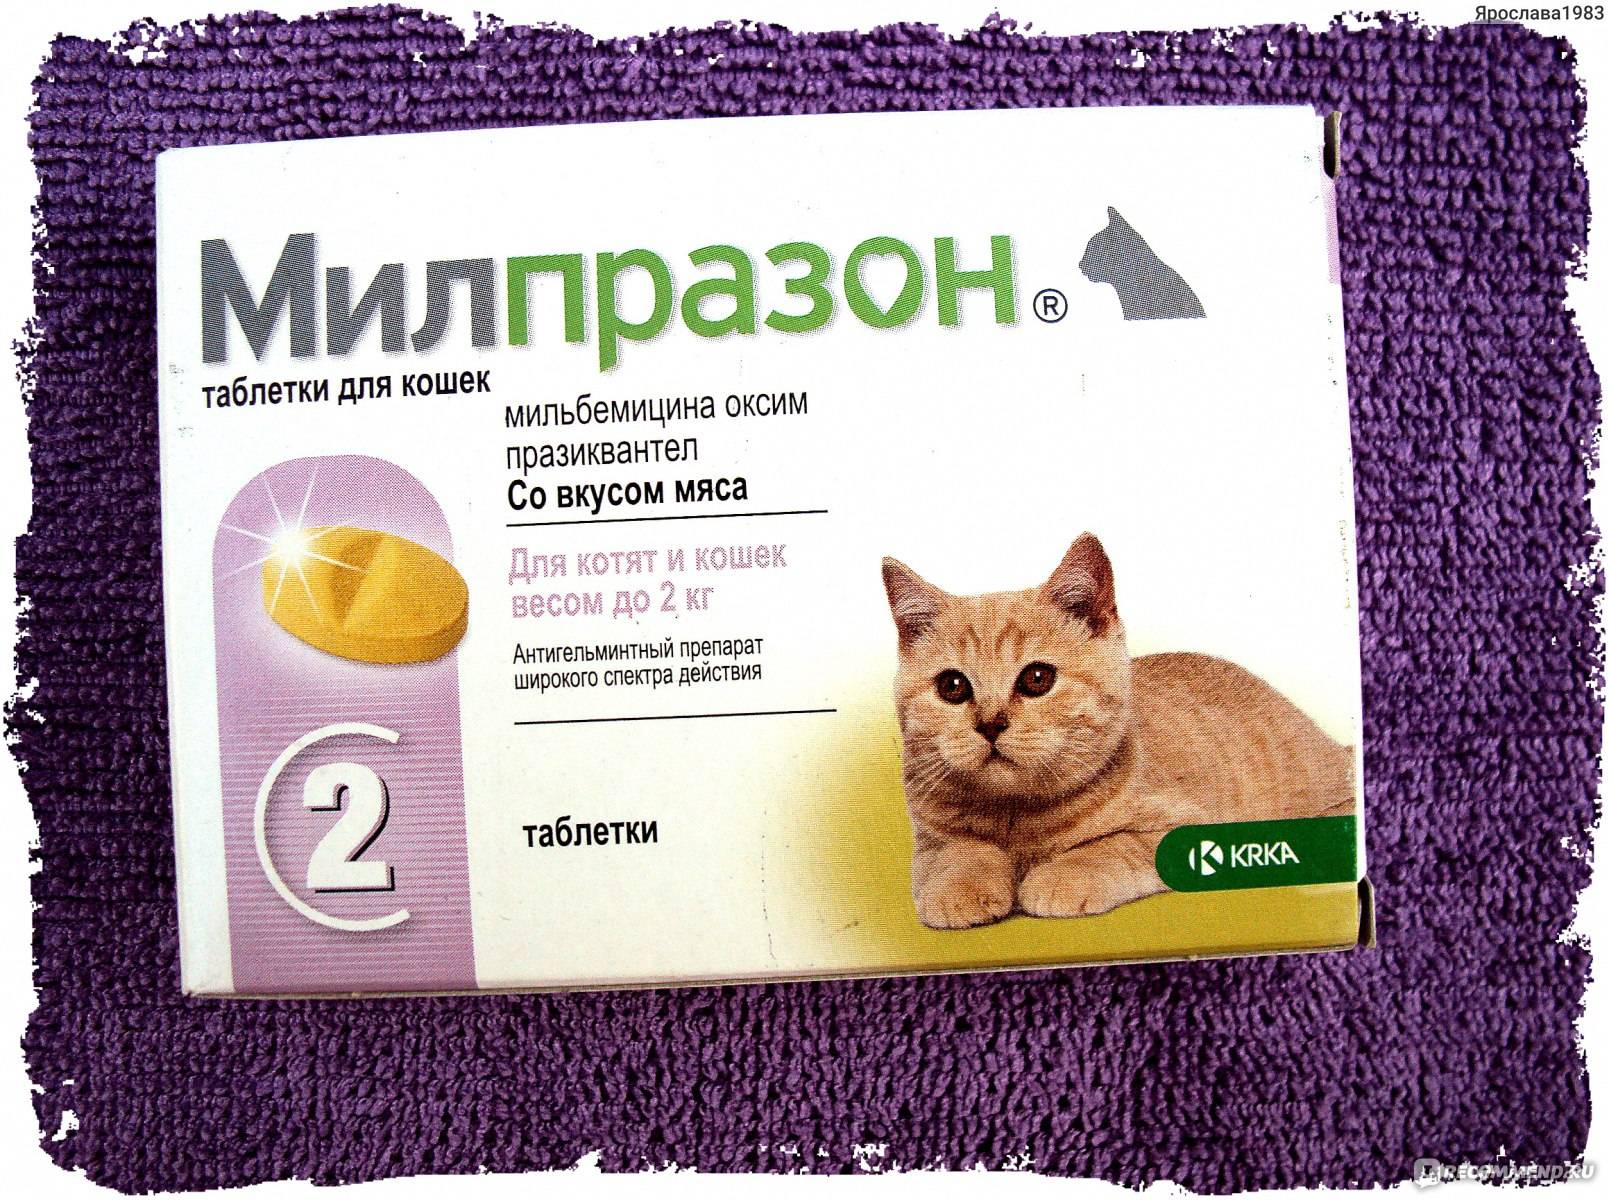 Новое в лечении кошачьего инфекционного перитонита